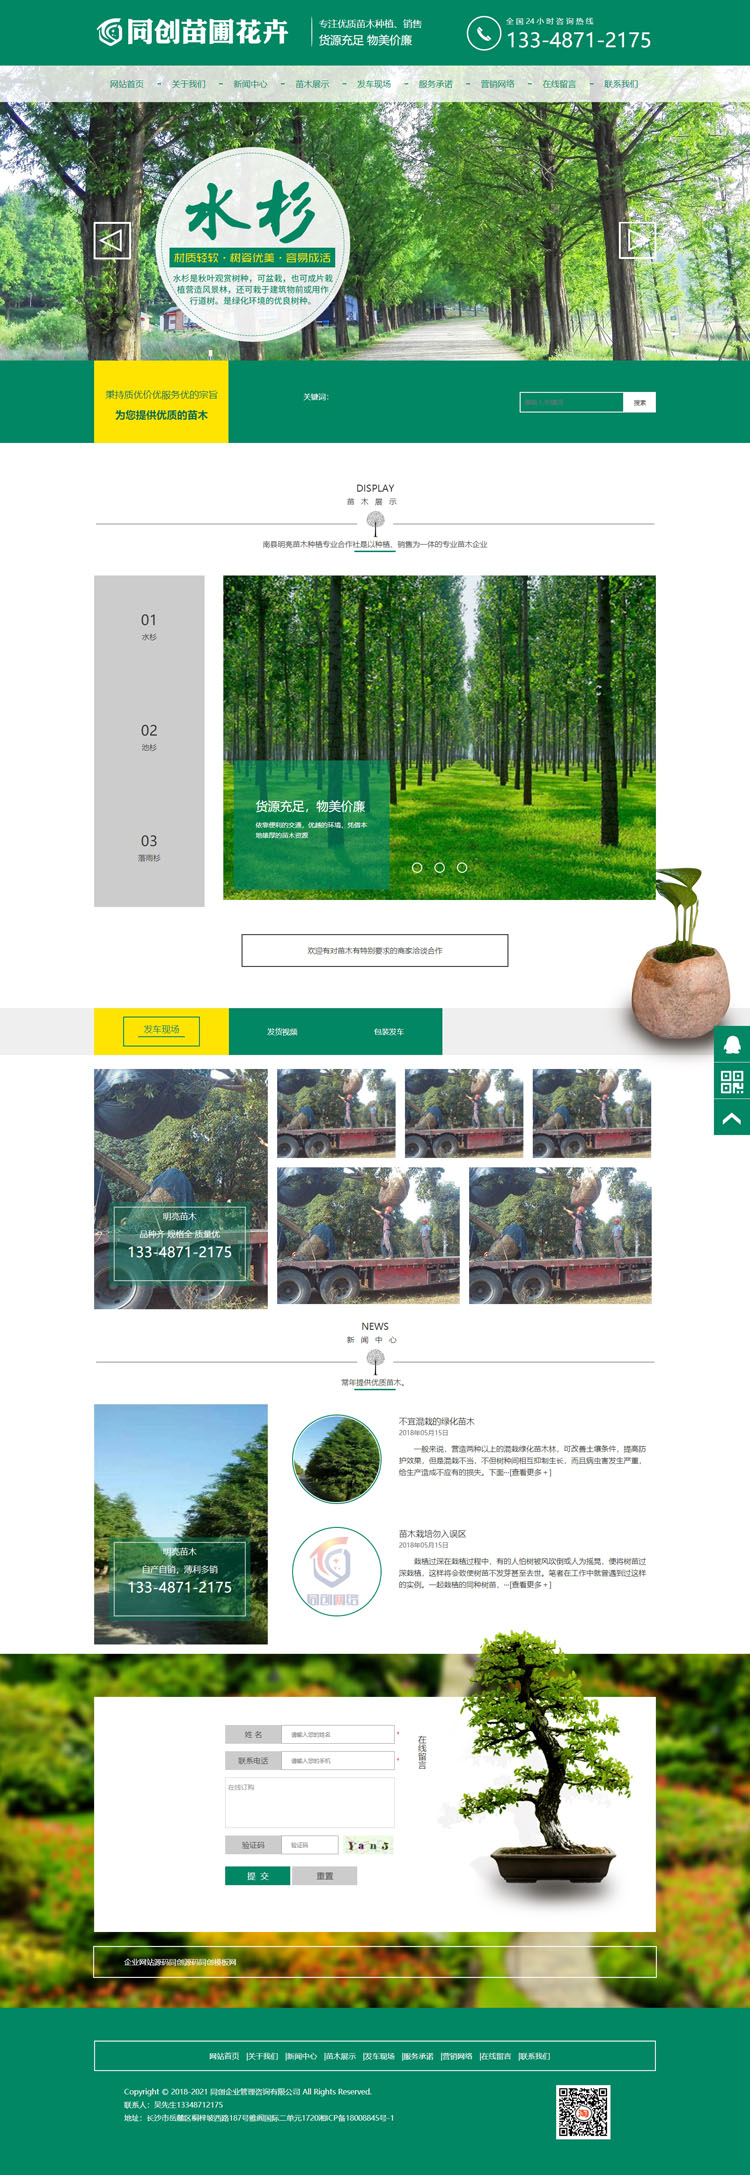 苗木种植基地网站制作源码程序-PB042-2